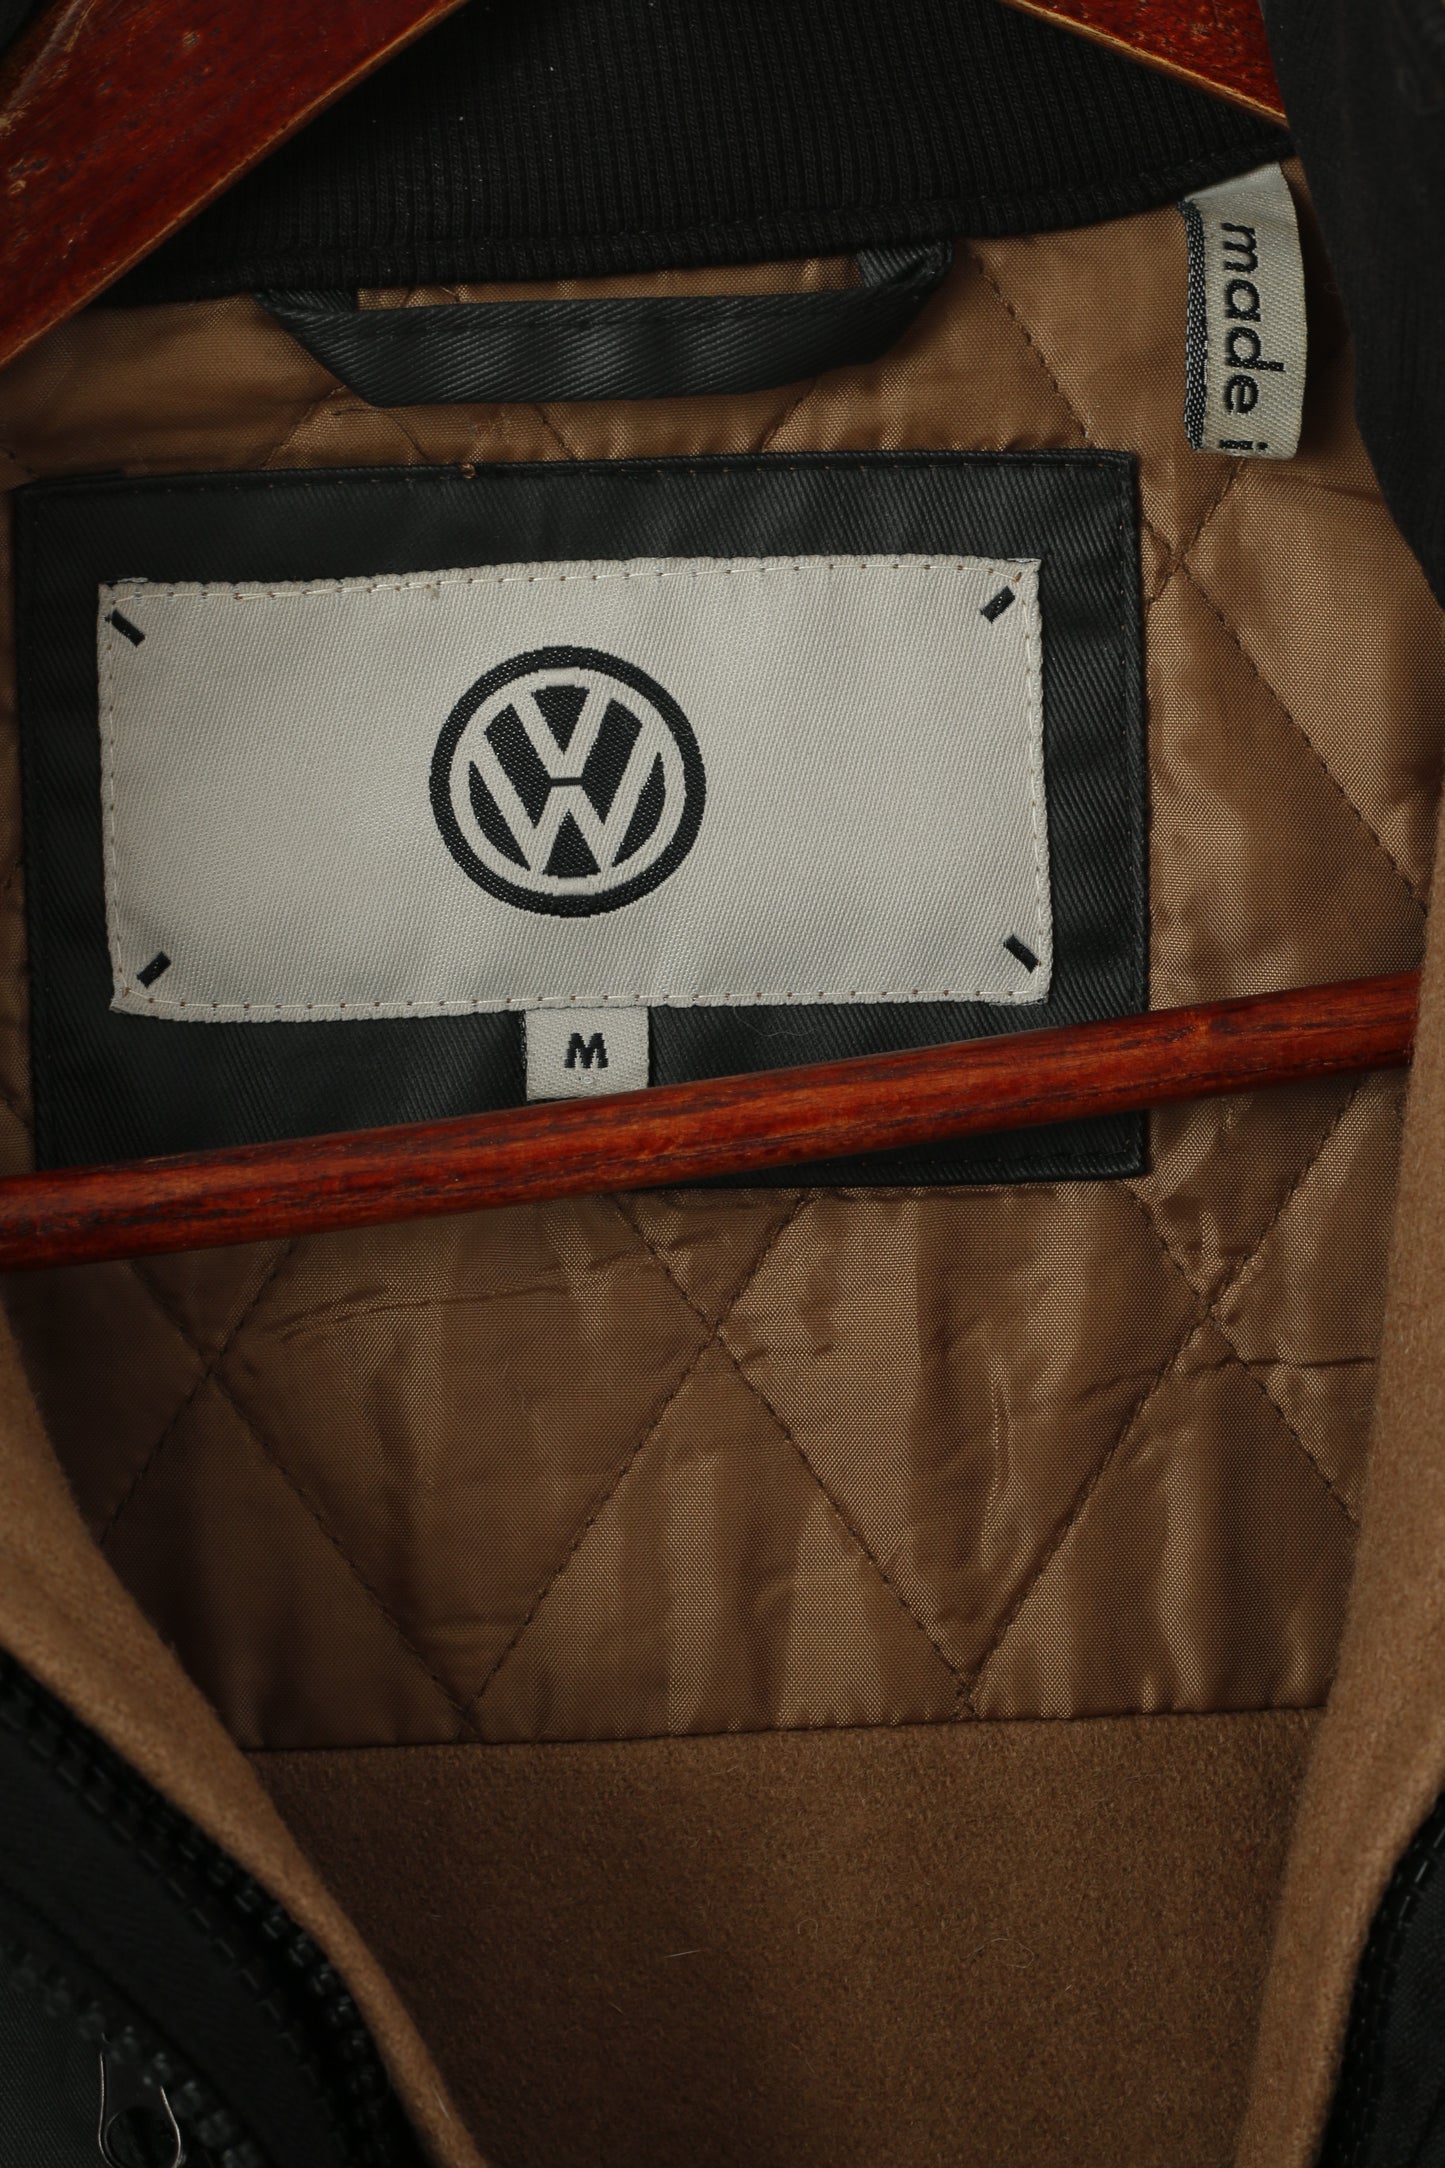 Volkswagen Femmes M Veste Noir Coton Wax VW Golf Zip Up Doublure Amovible Haut